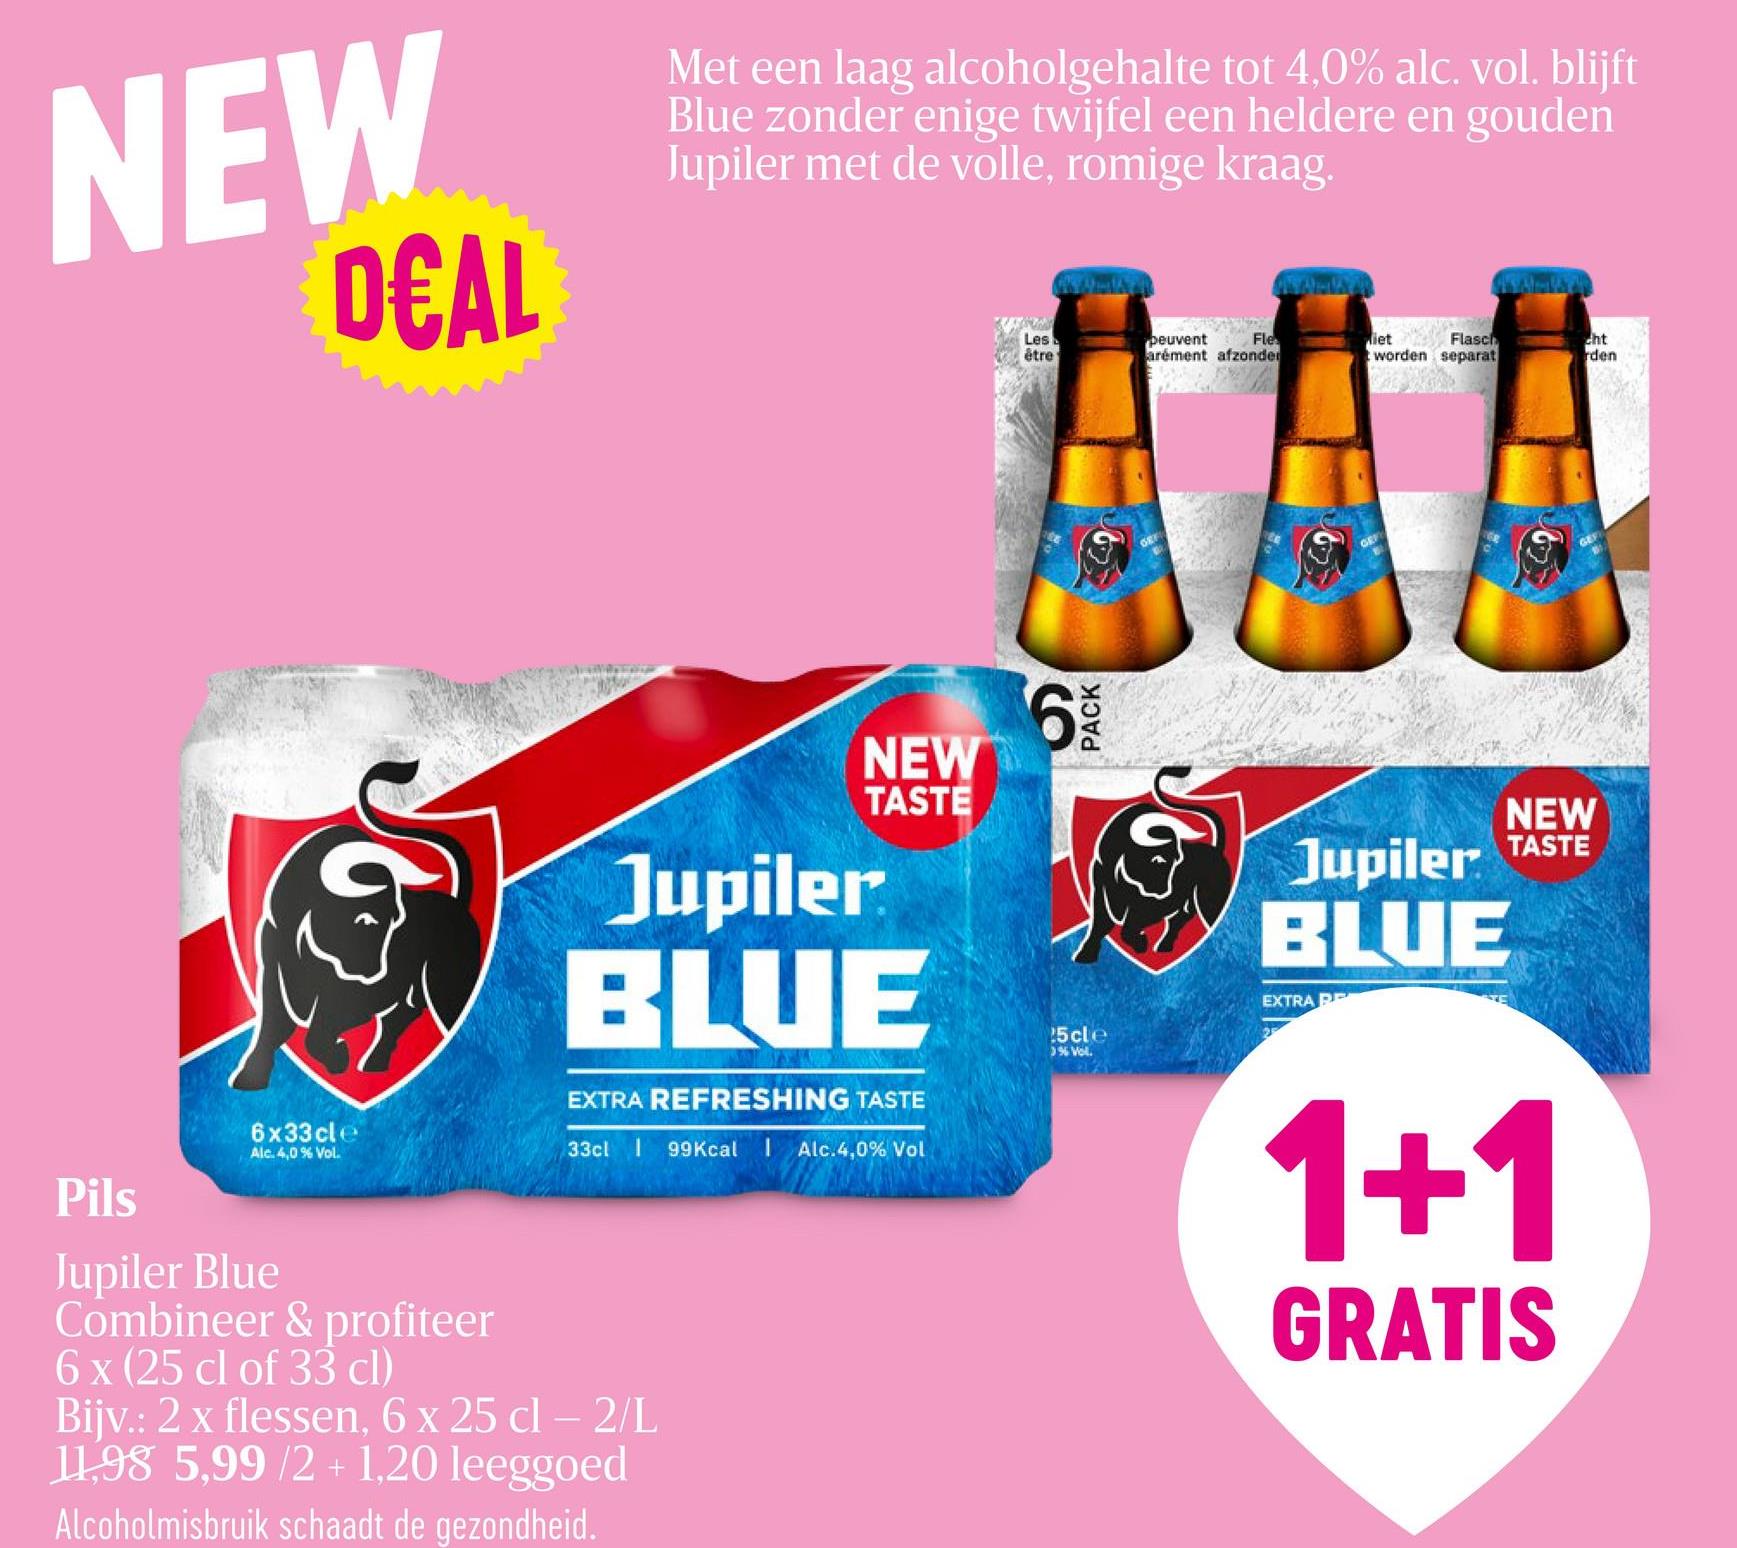 Blond bier | Pils | Blue | 4% | Fles Jupiler Blue fles 6x25cl